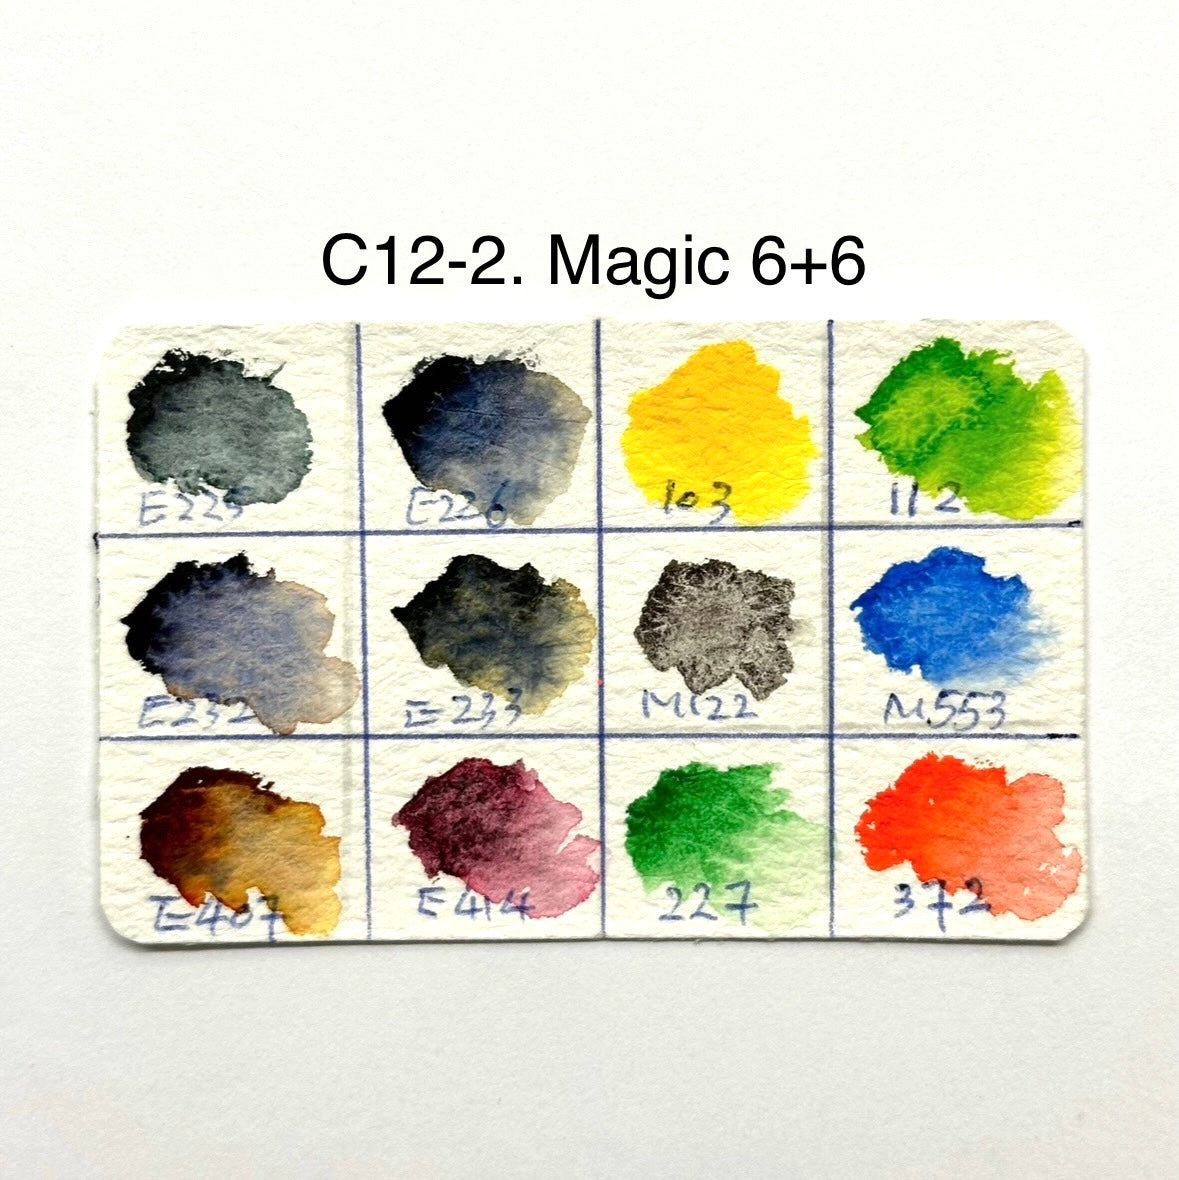 Sample Palettes - 12 colors